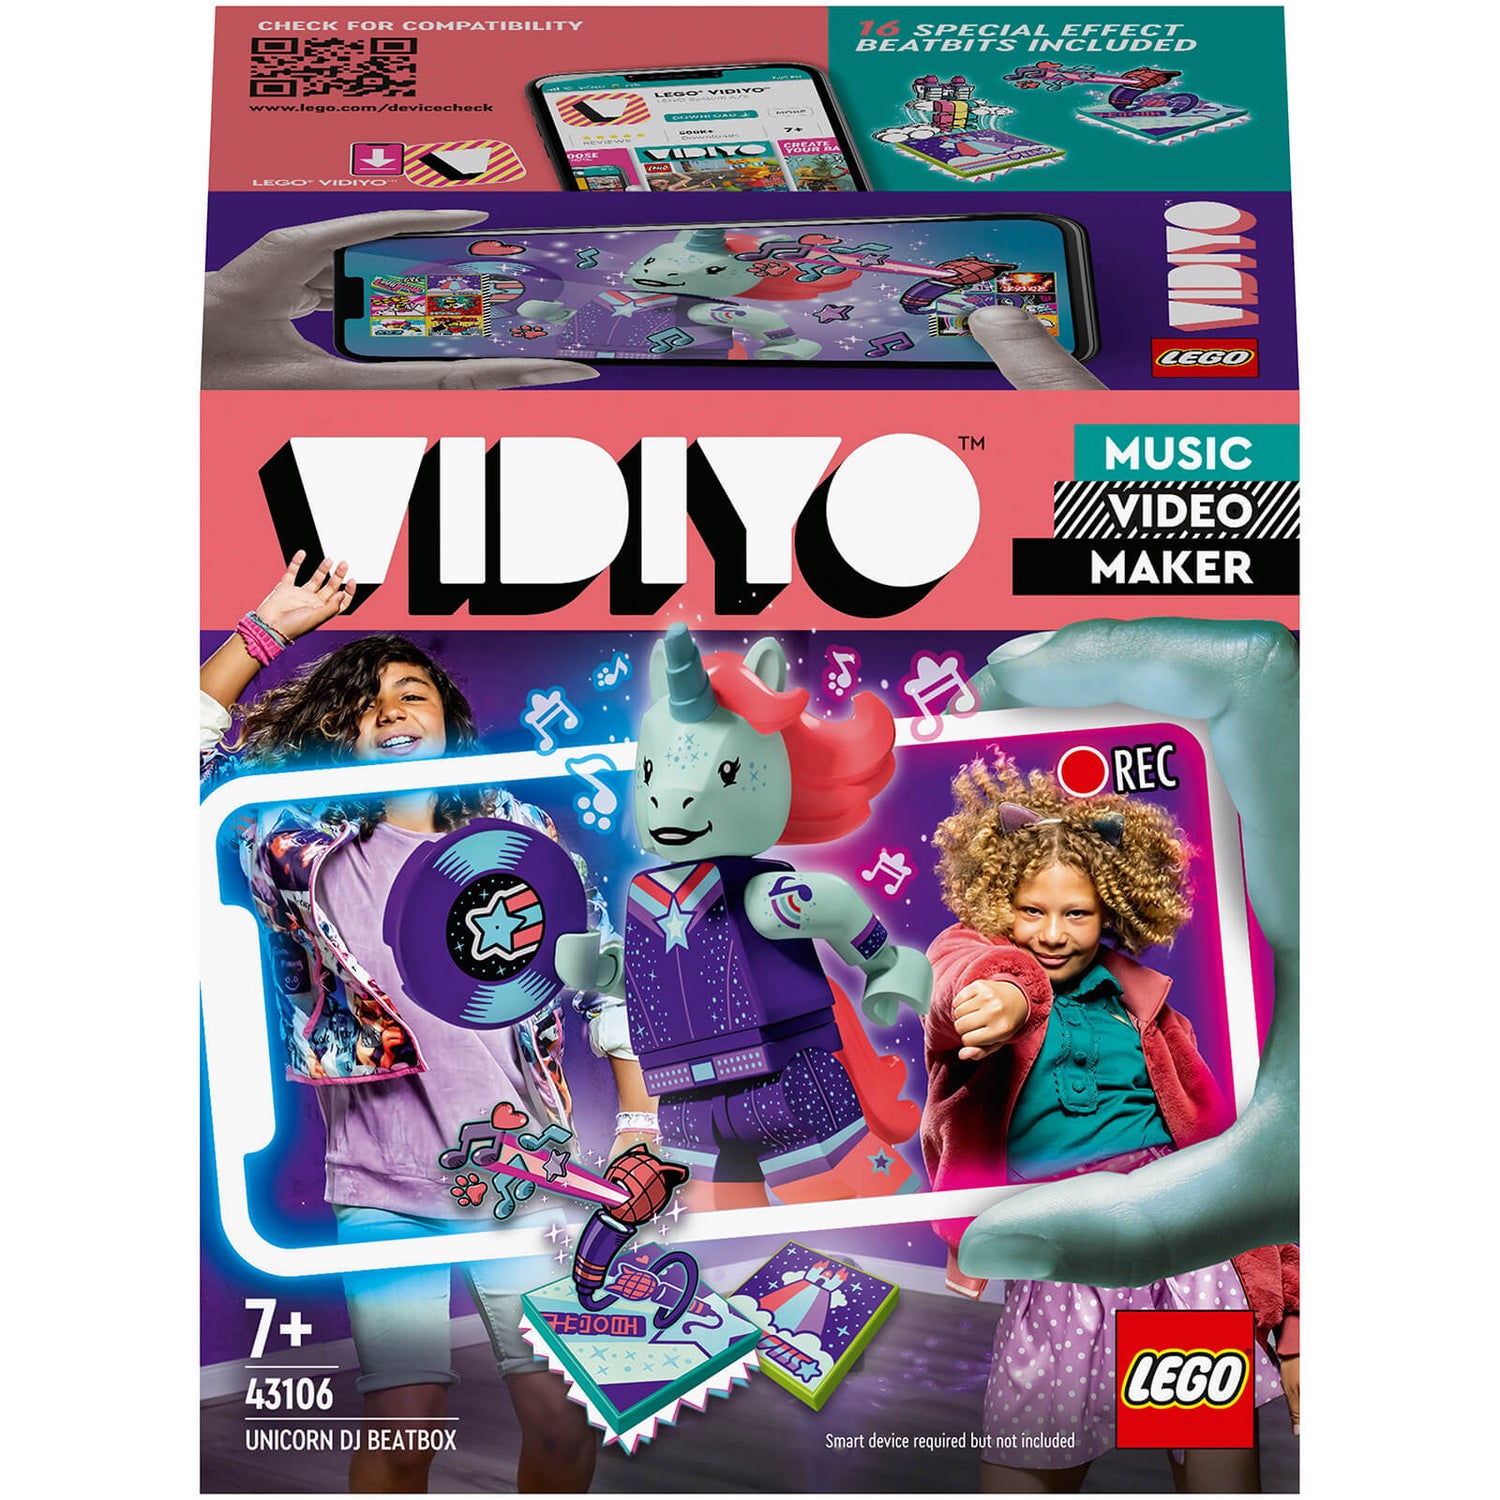 LEGO VIDIYO Eenhoorn DJ BeatBox Music Video Maker Speelgoed (43106)